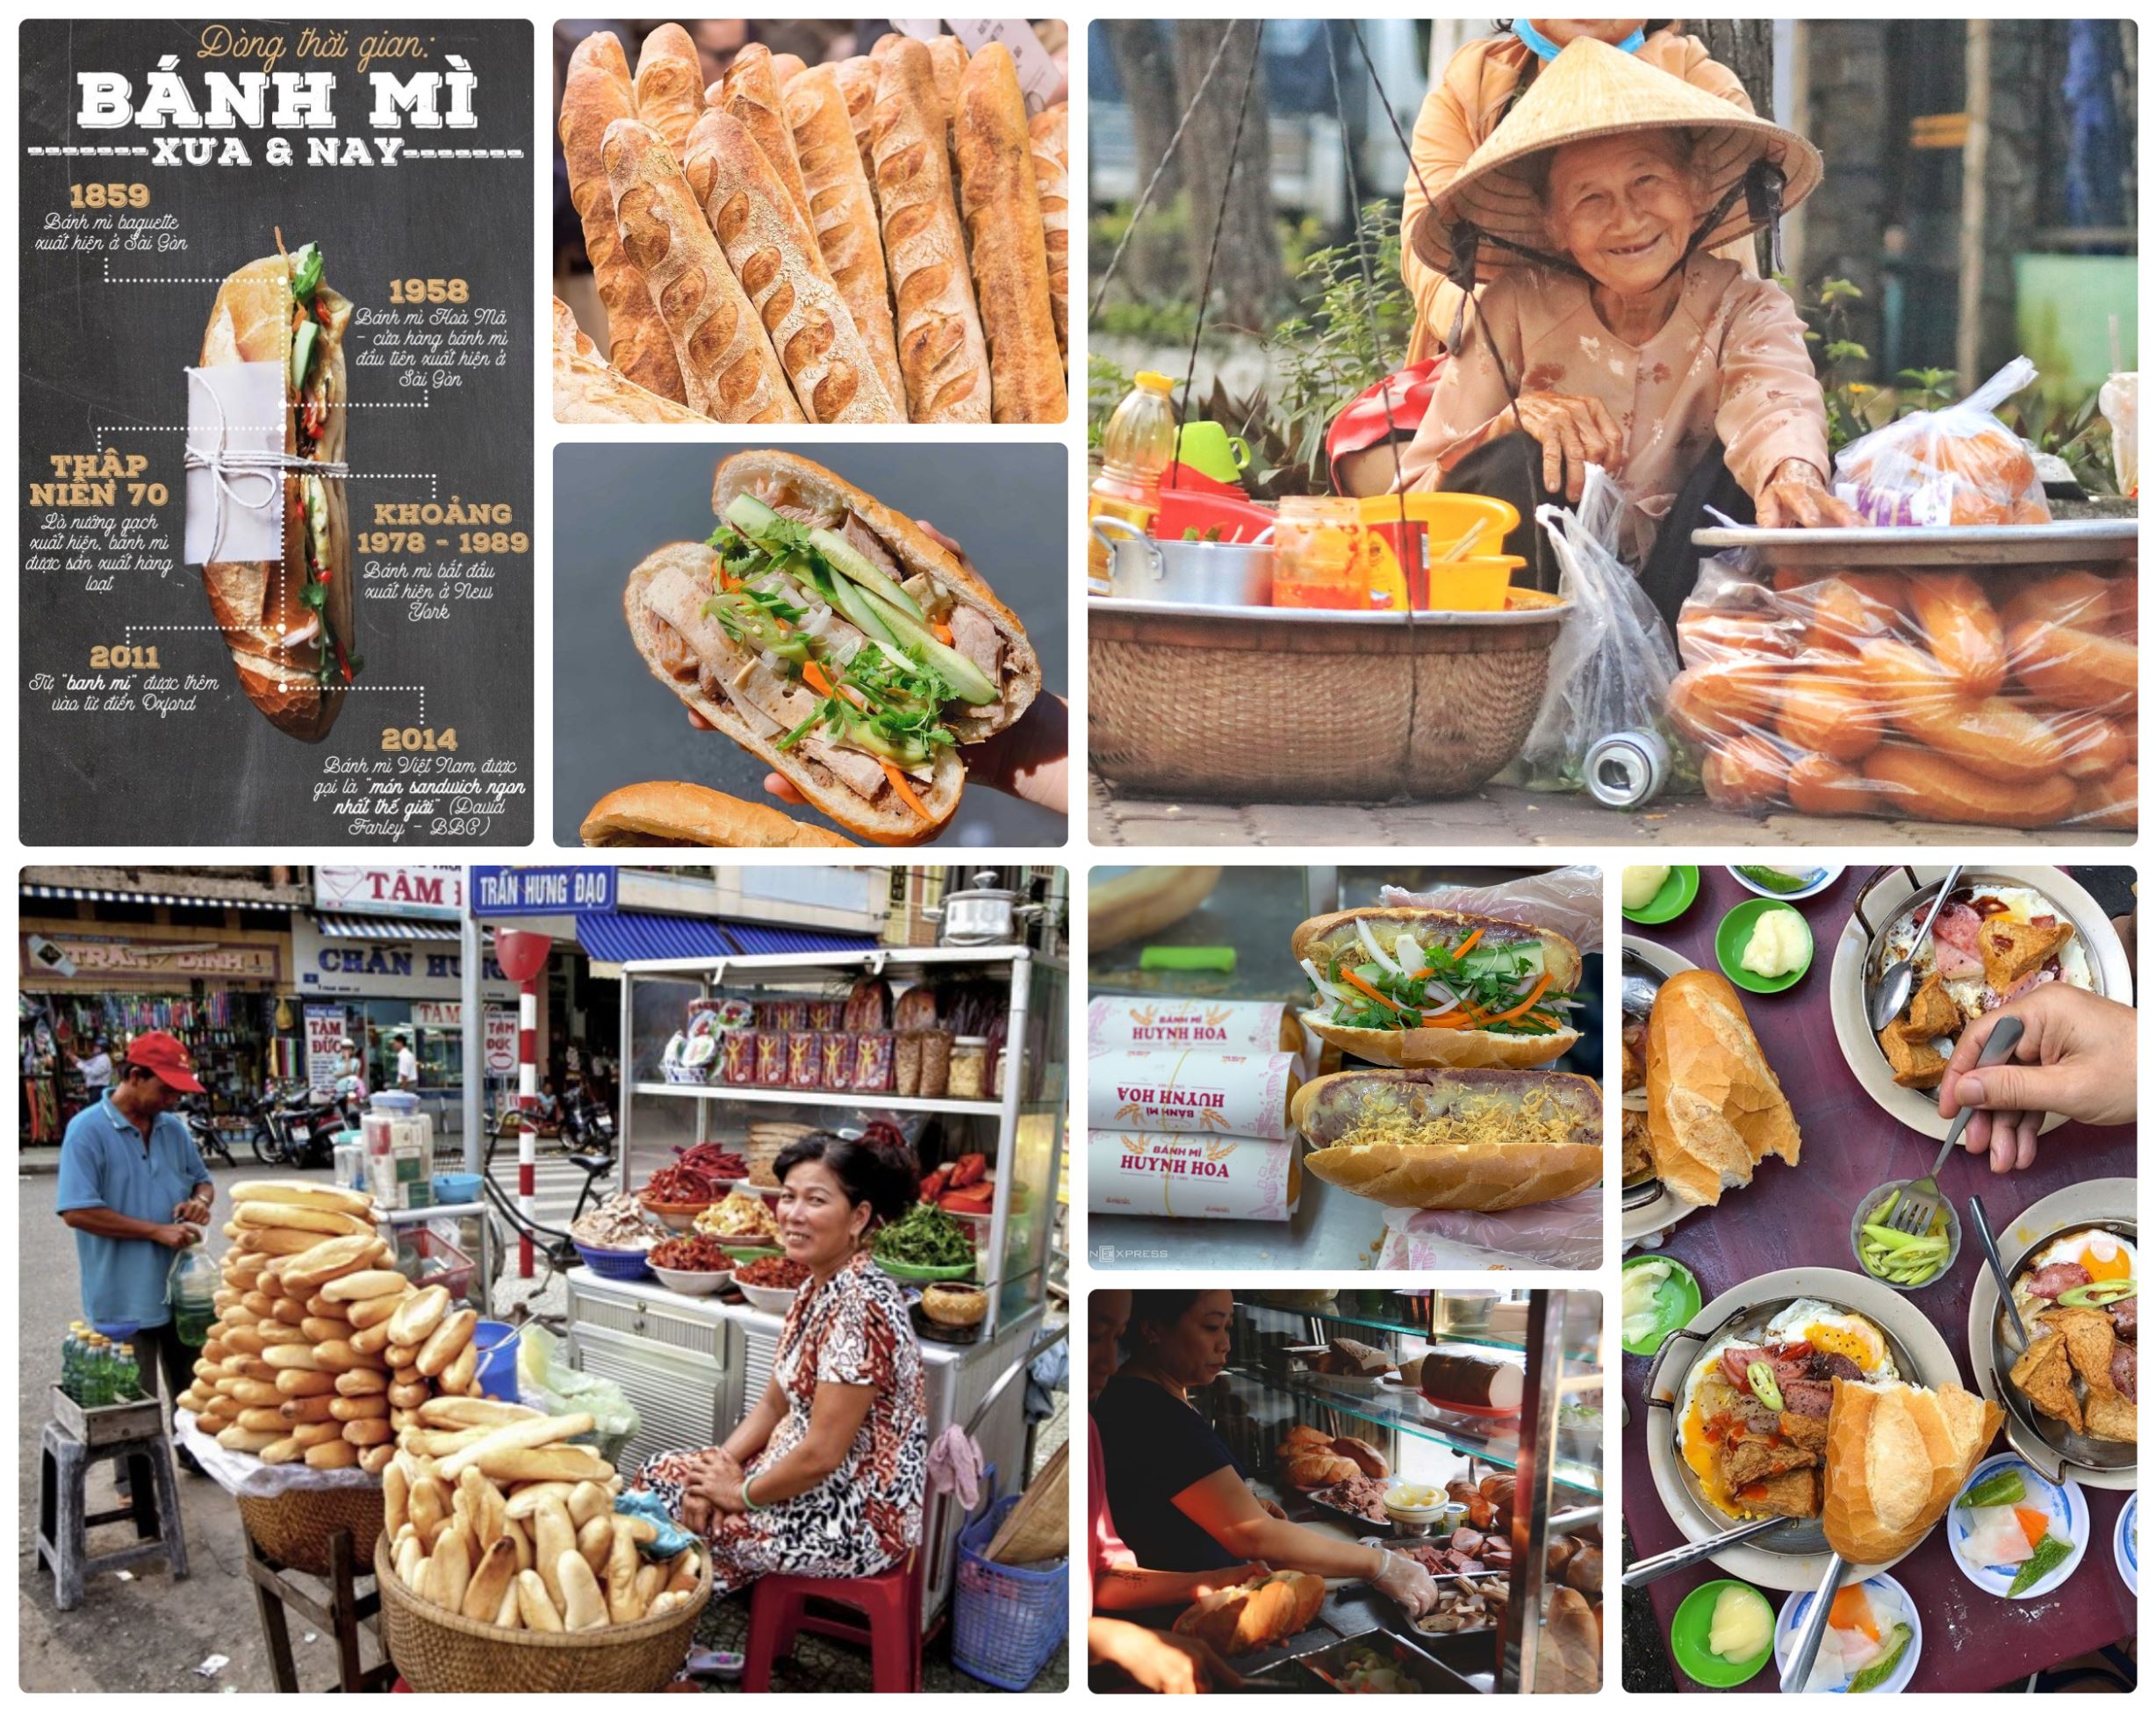 Bánh mỳ đã trở thành một nét văn hóa không thể thiếu của người Việt Nam